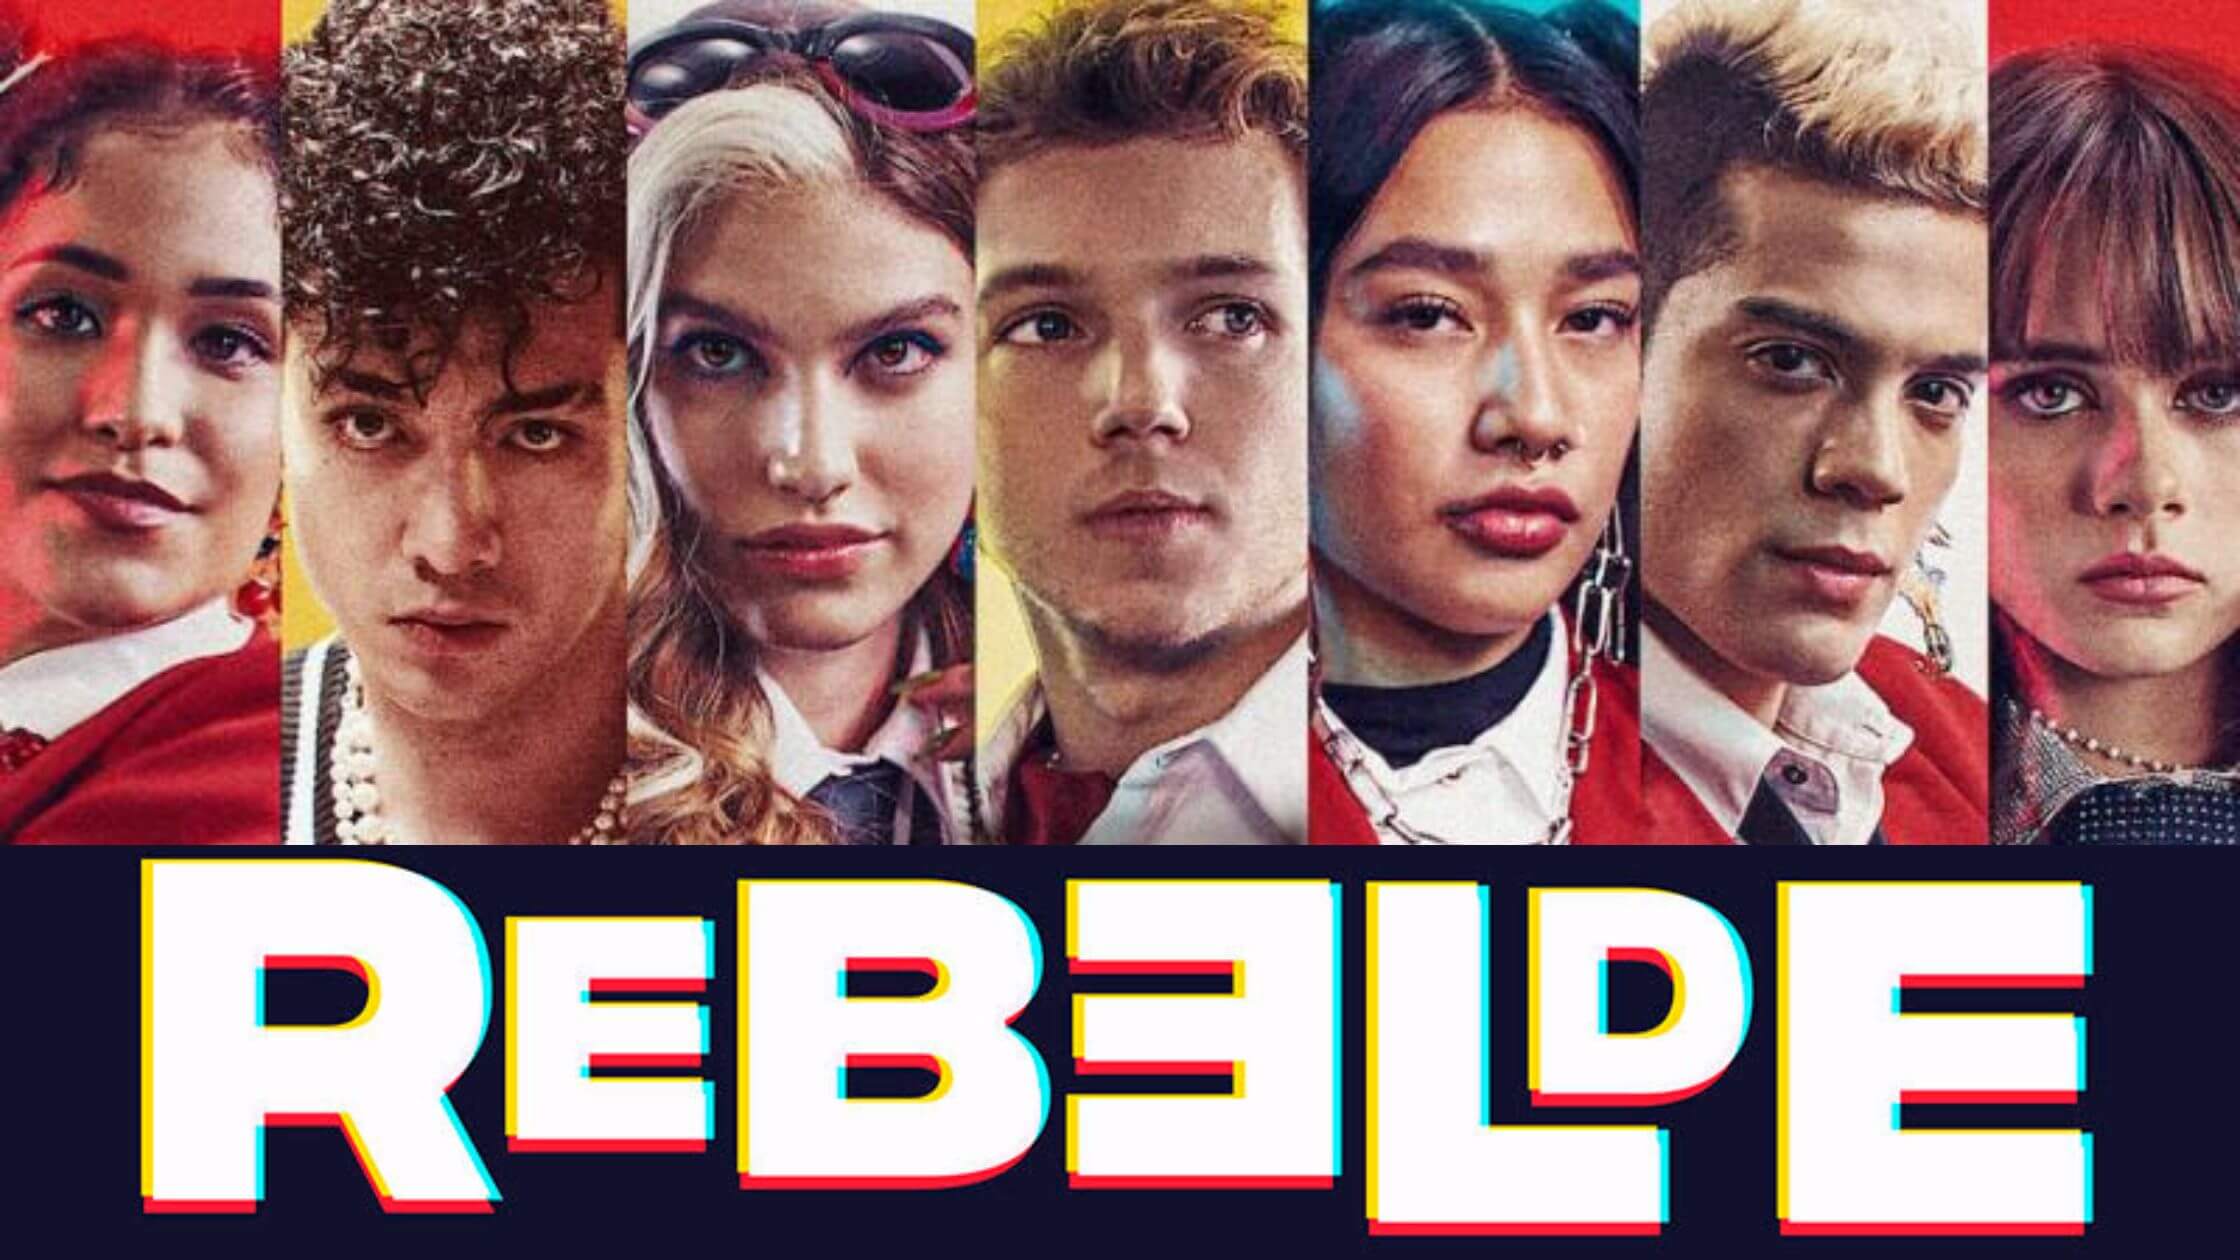 Rebelde S3 fecha de estreno elencos y trama 2